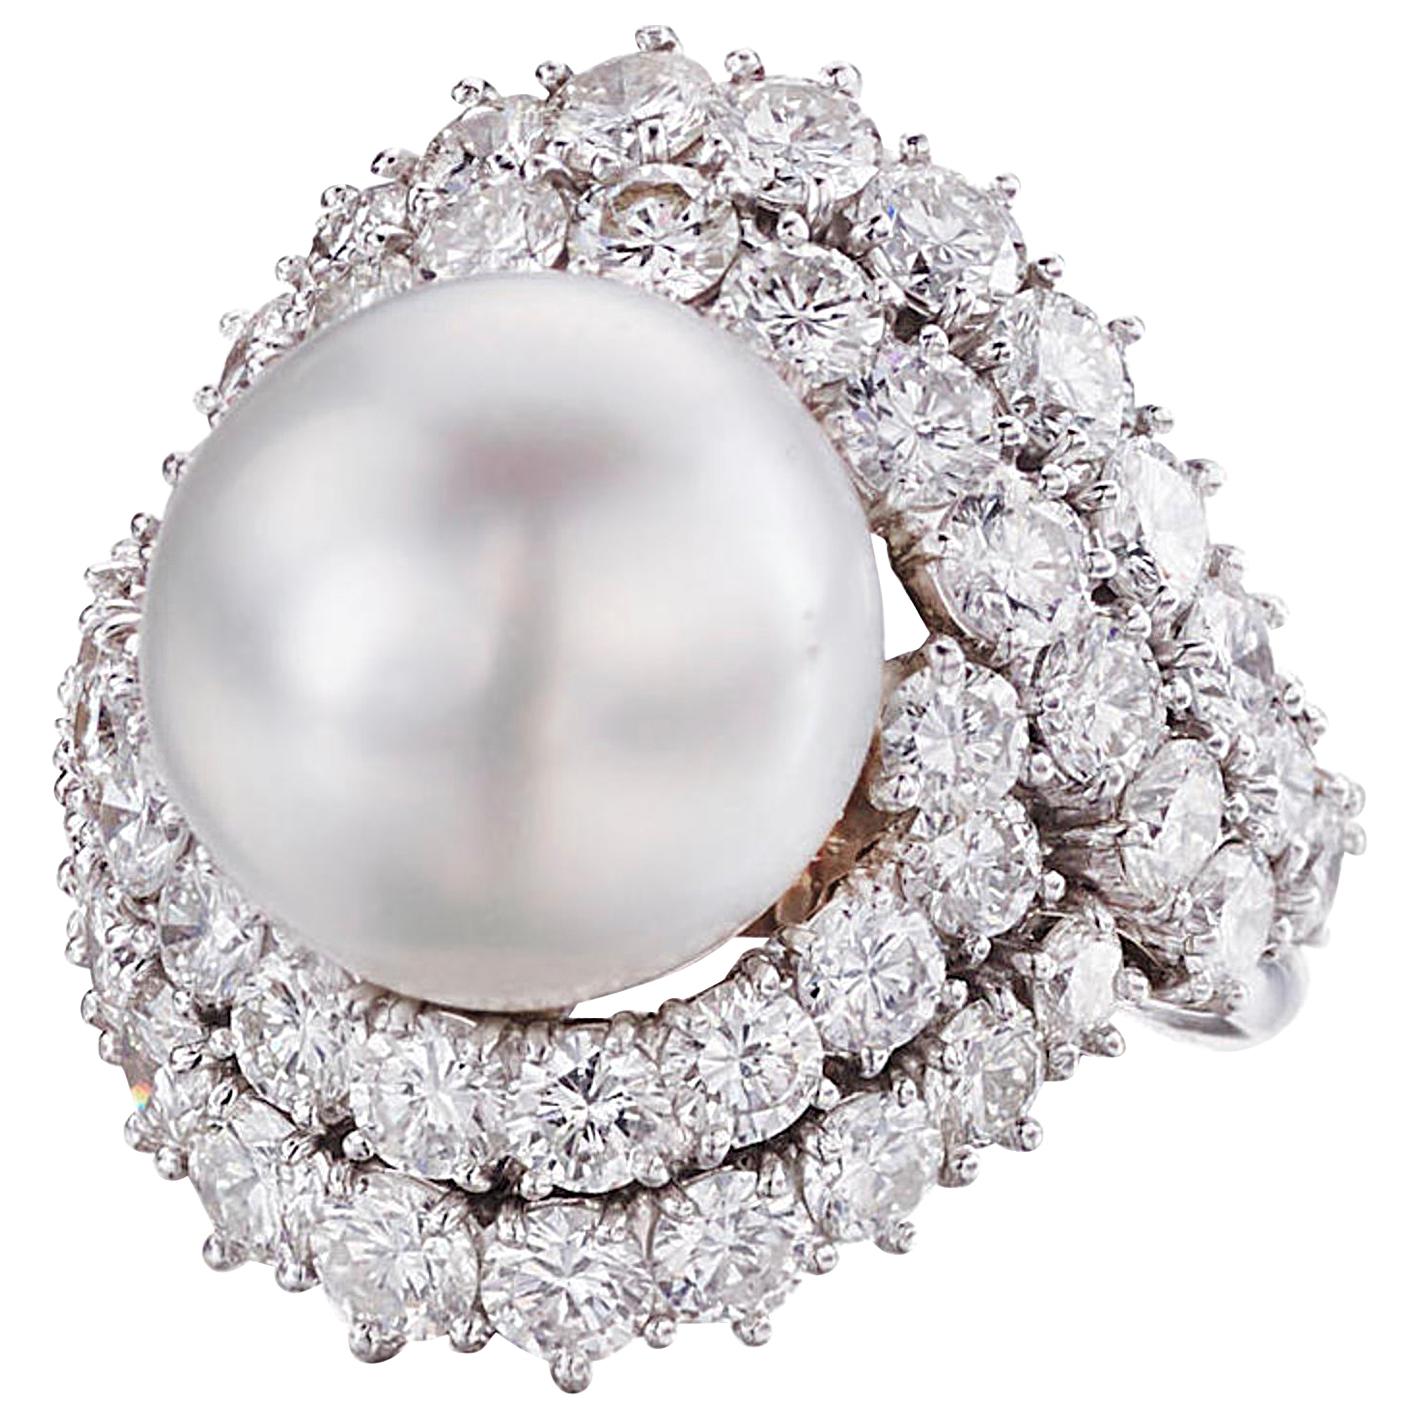 Van Cleef & Arpels Tahitian Pearl and Diamond Ring